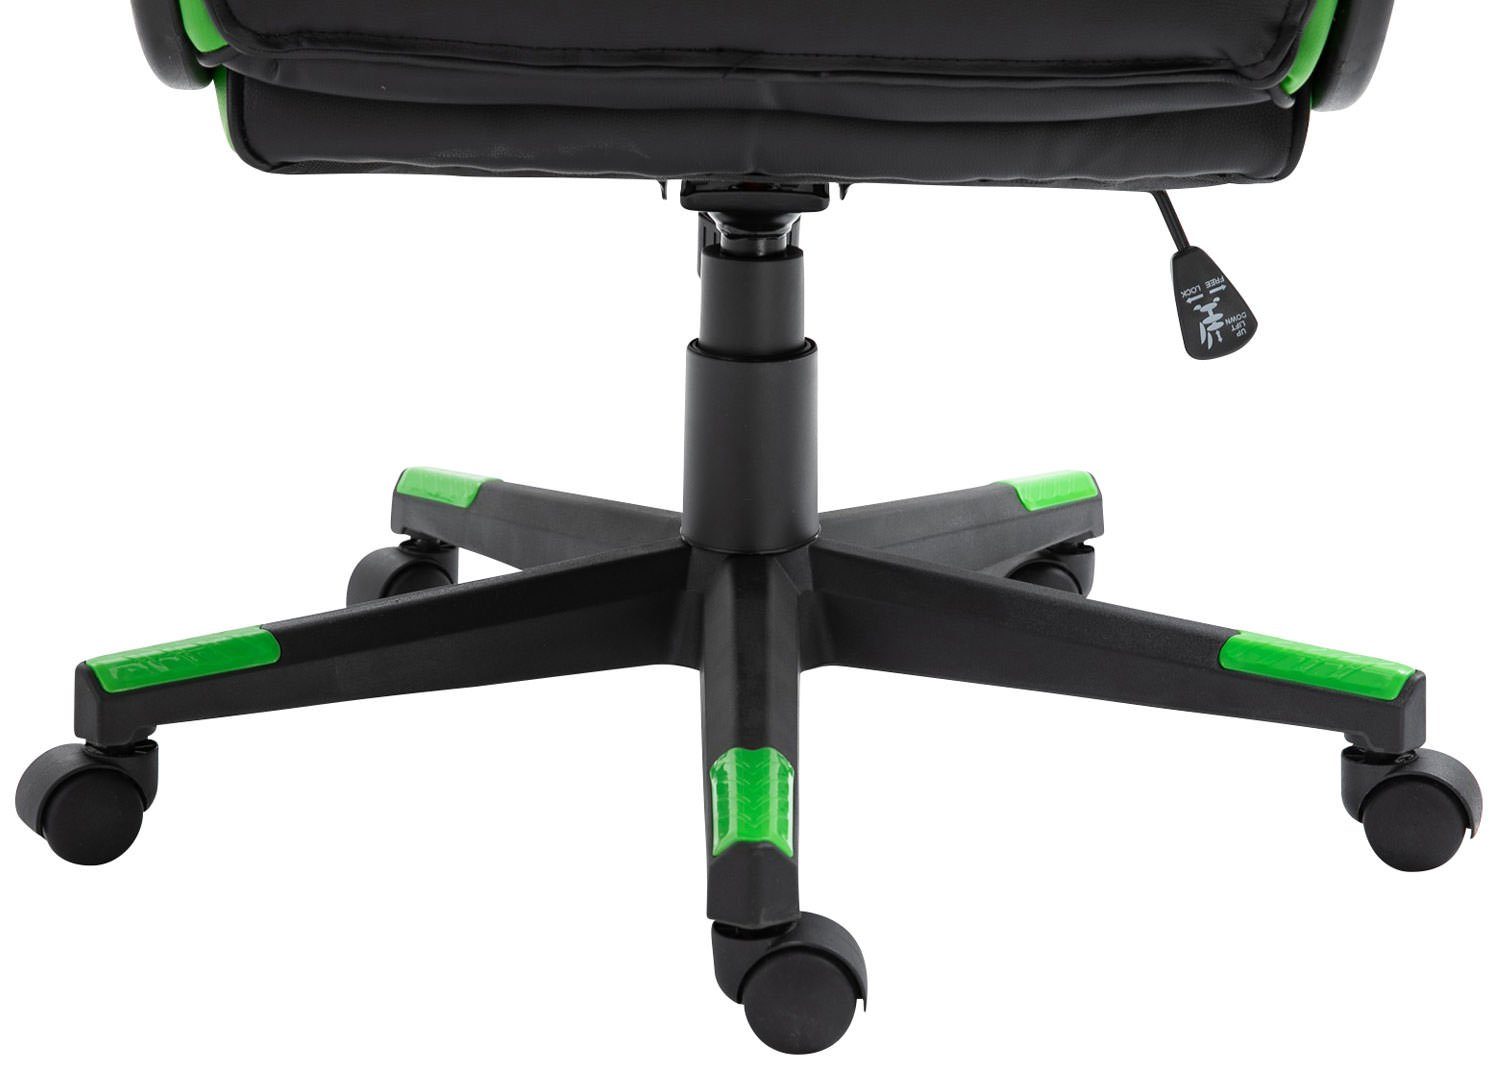 CLP Gaming Chair und drehbar Omis schwarz/grün höhenverstellbar Kunstleder